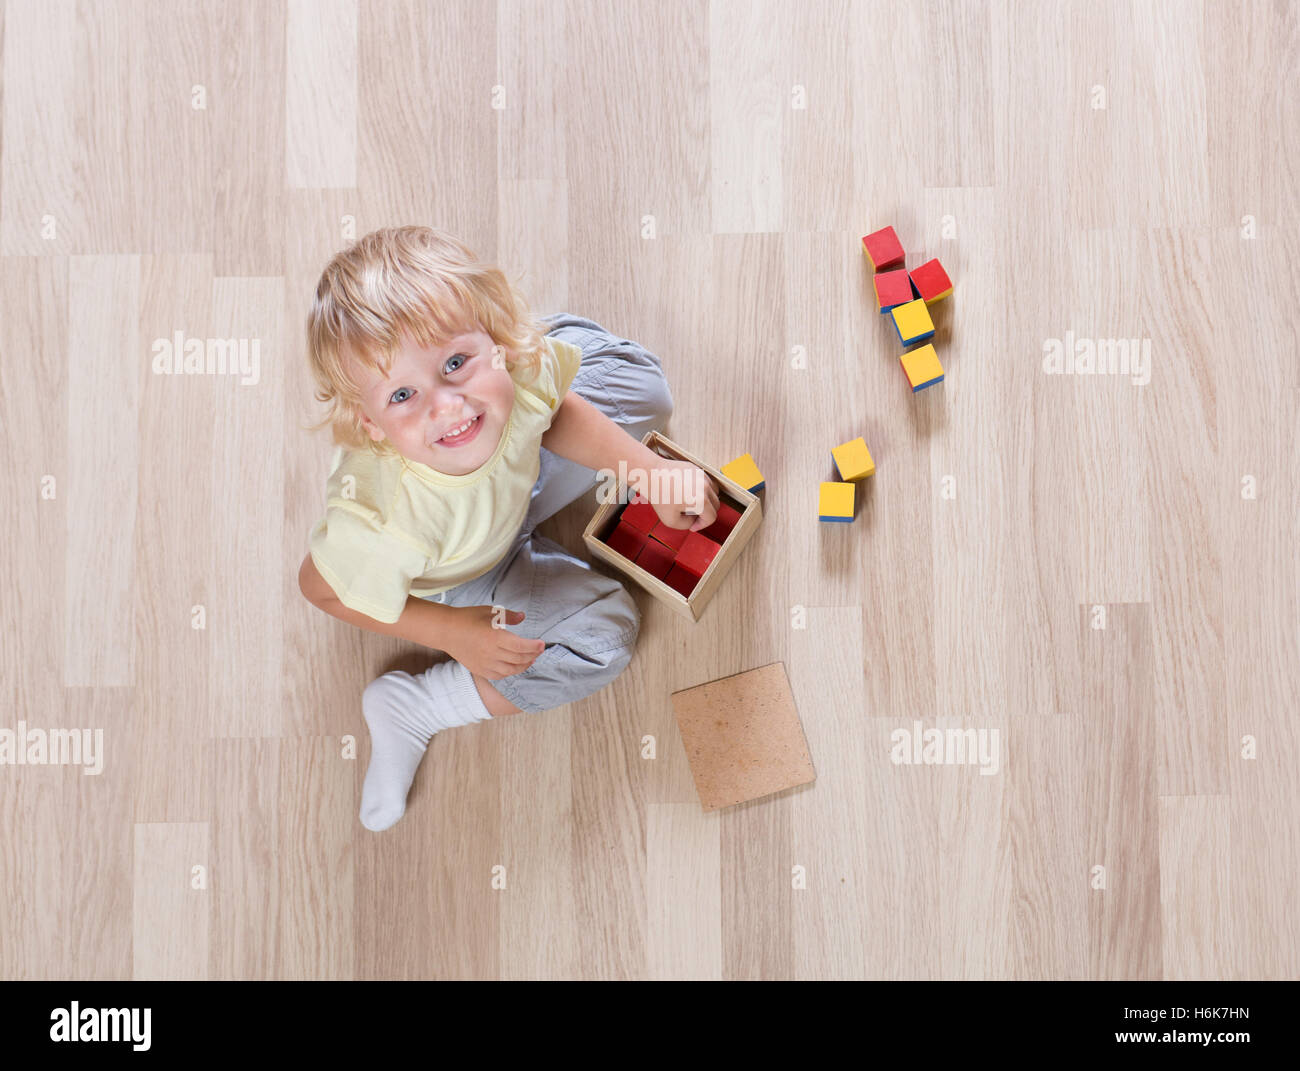 Kind spielt mit Spielzeug auf Stock-Draufsicht Stockfoto